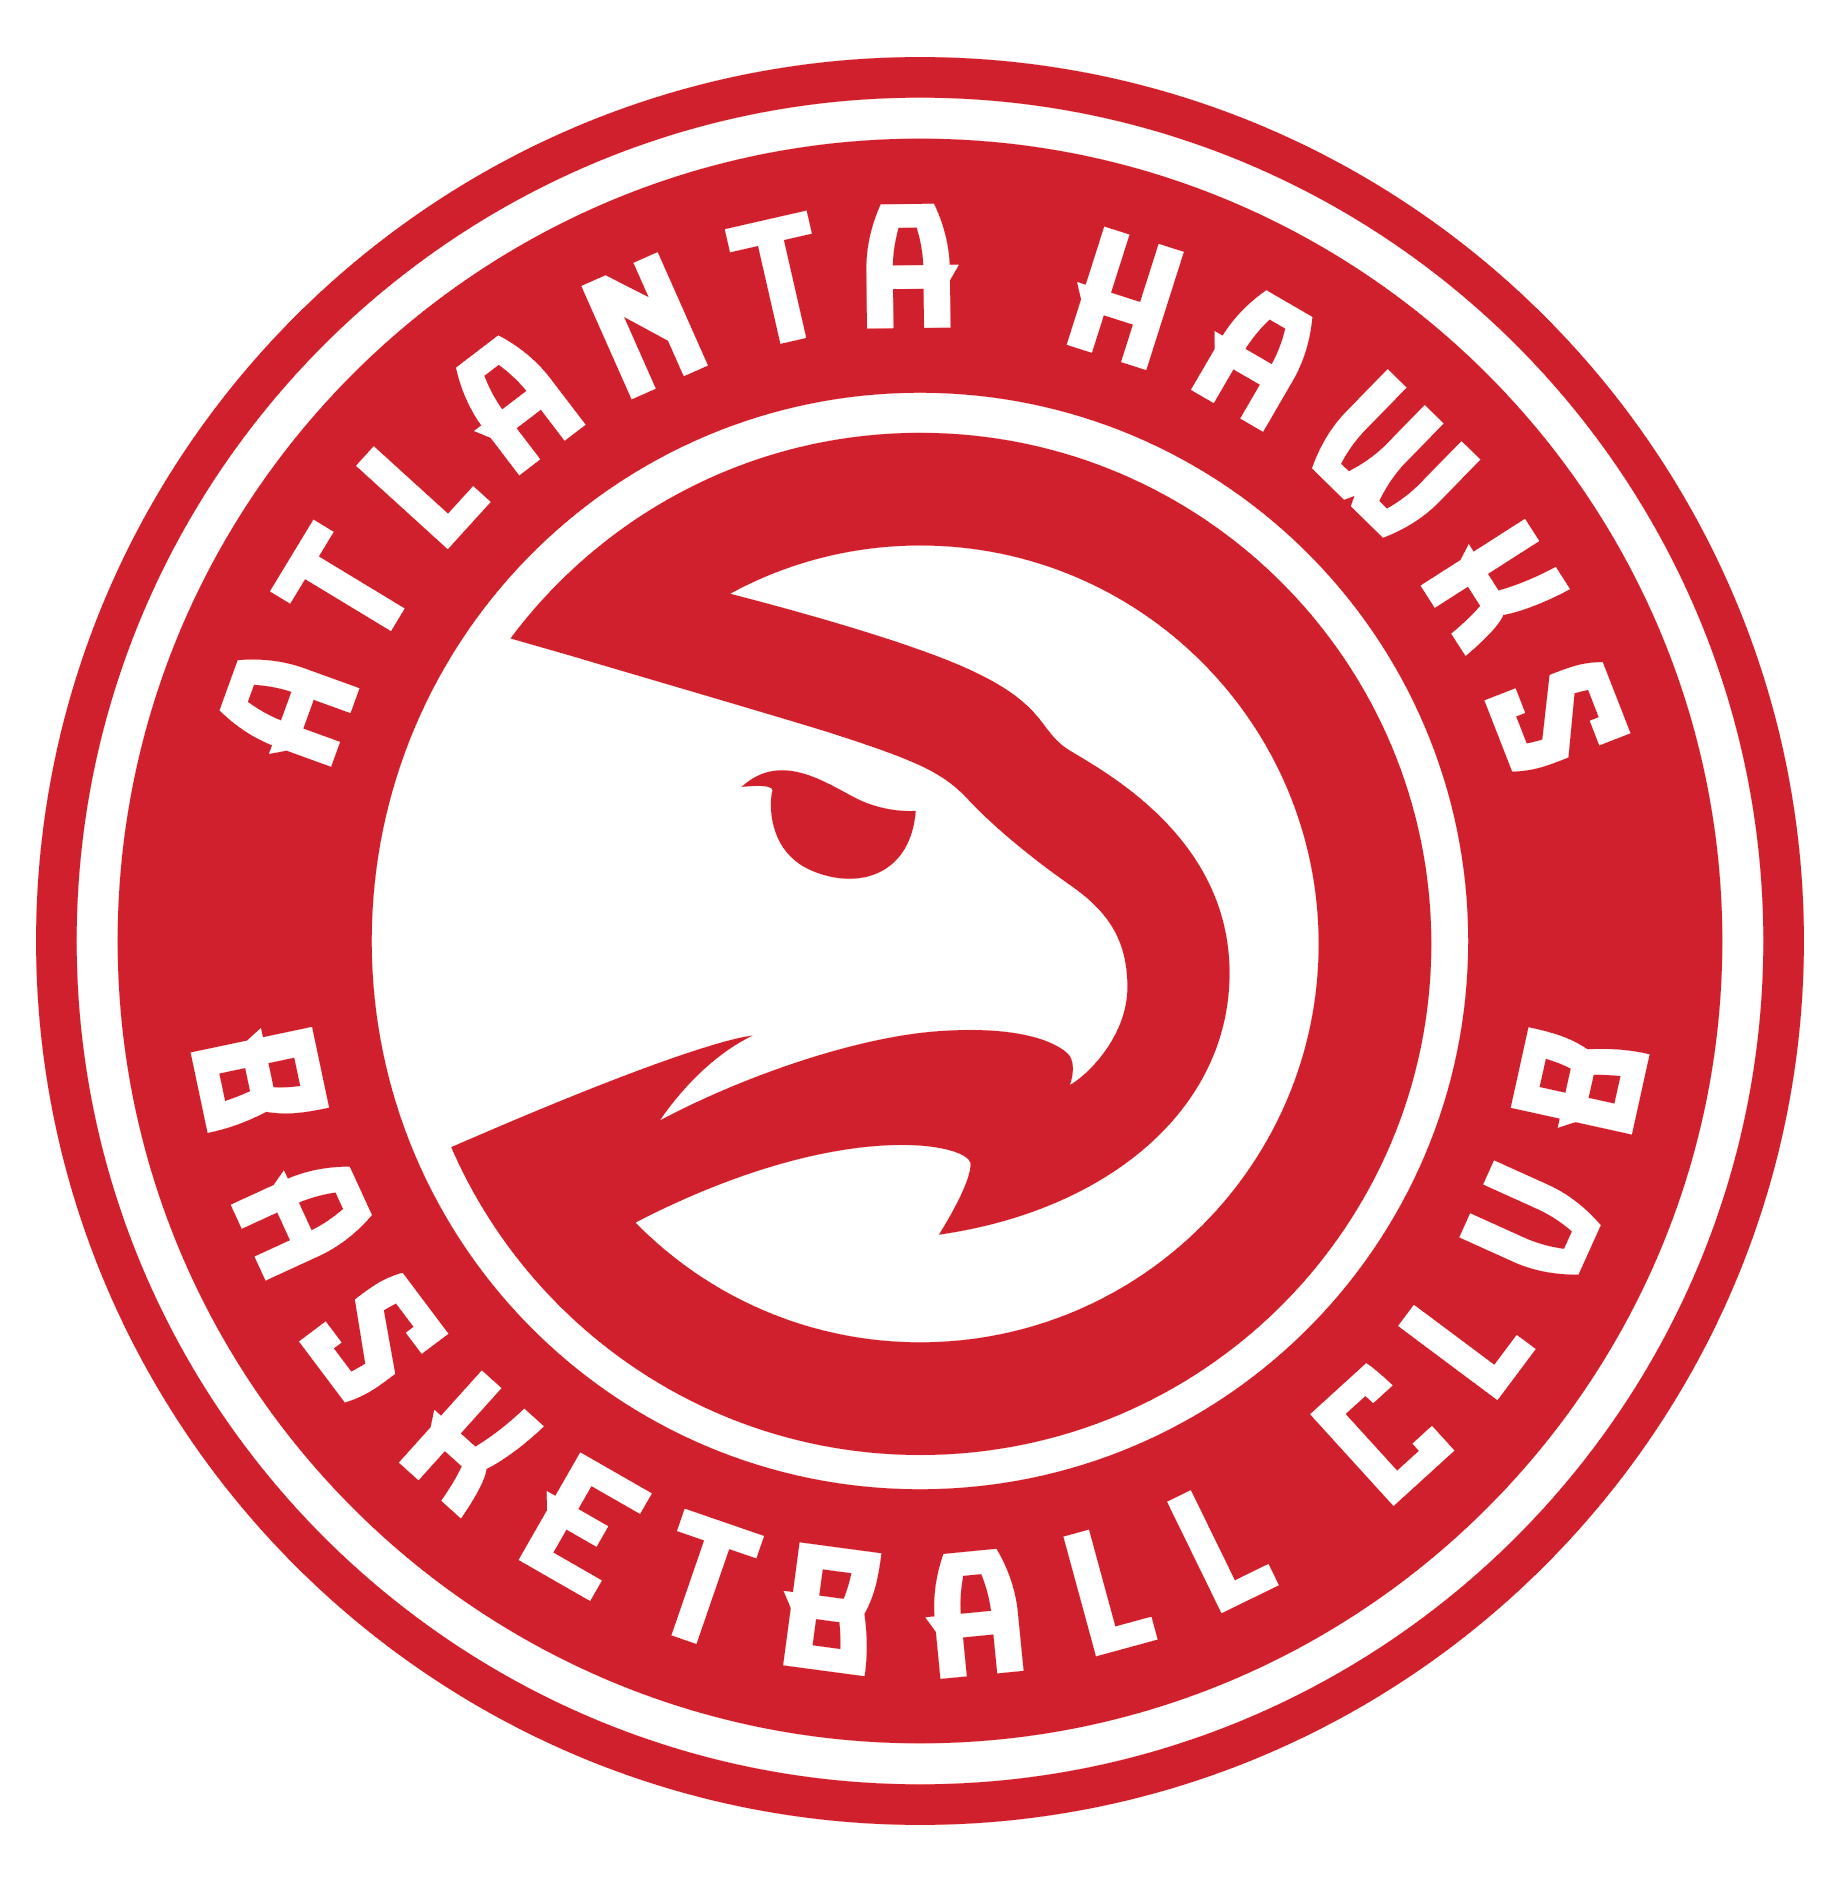 Atlanta Hawks – Logos Download